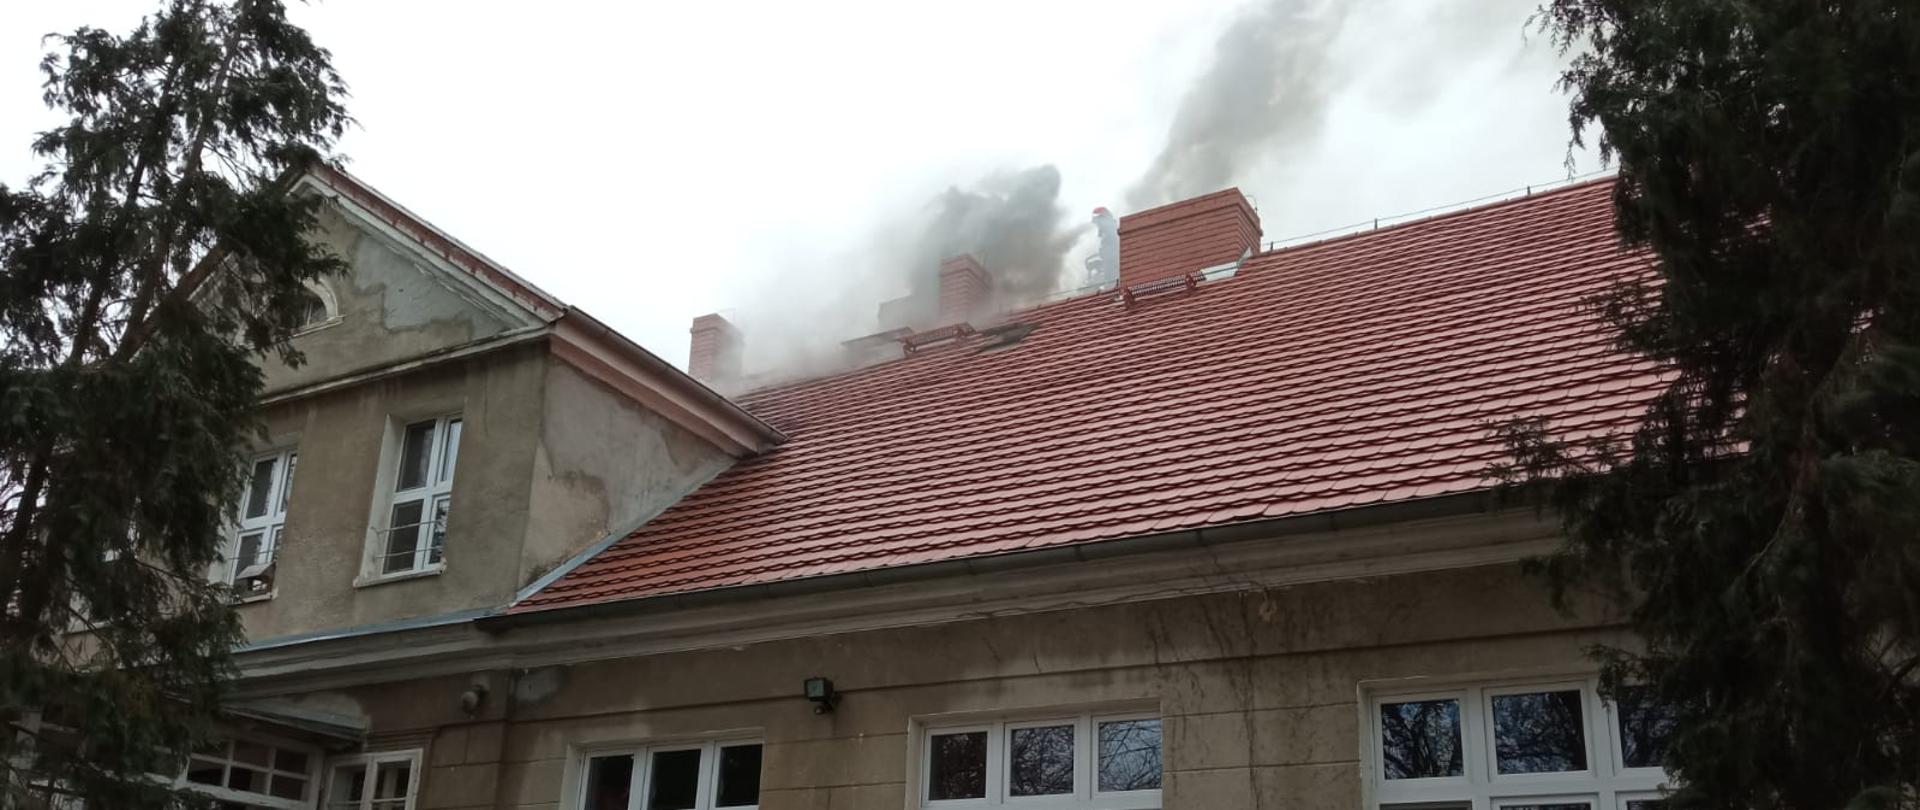 Na zdjęciu pożar sadzy w kominie budynku dym wydobywający się z komina